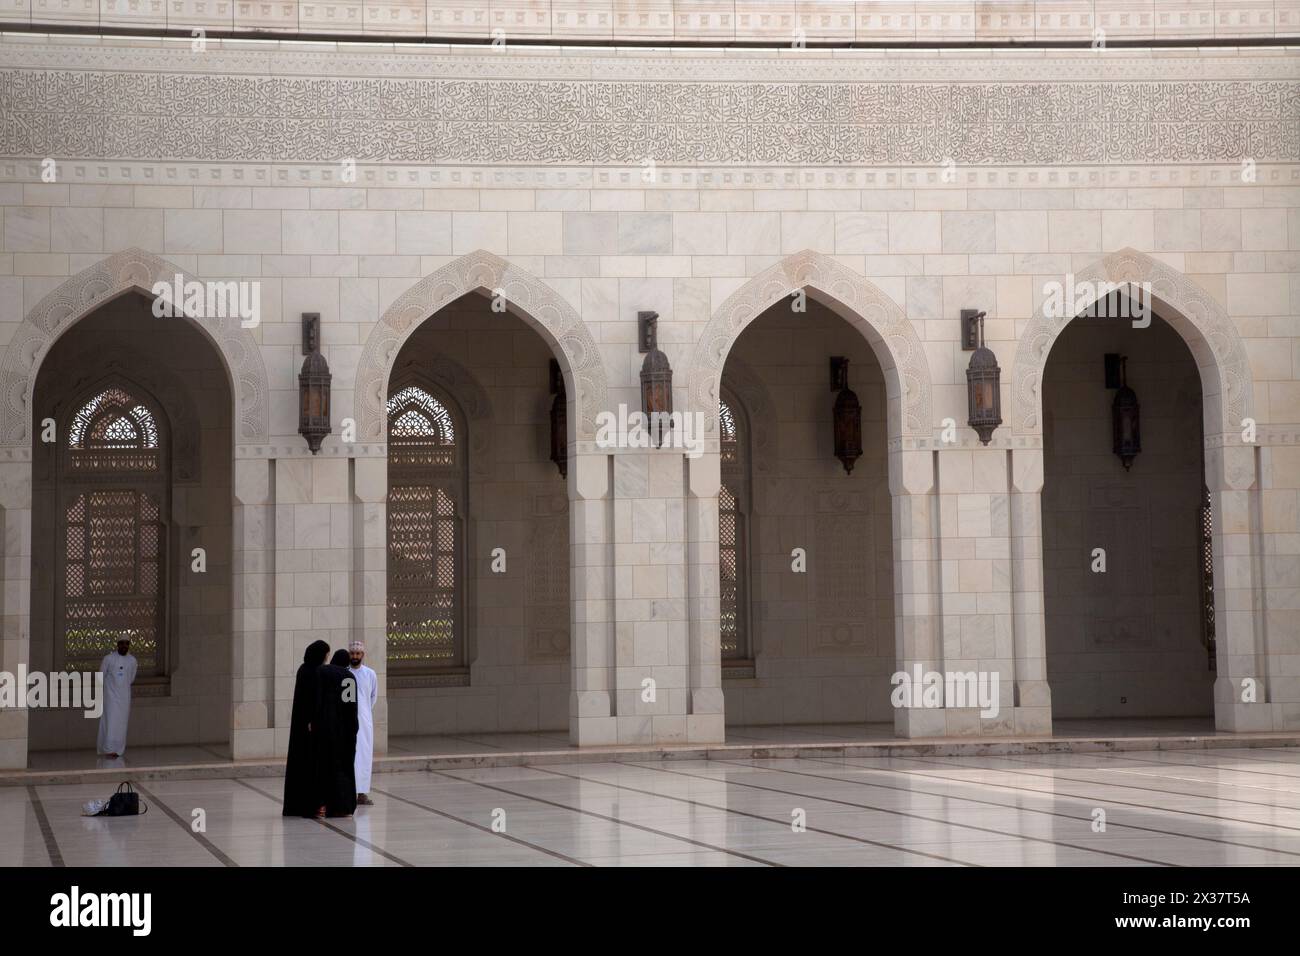 hommes et femmes omanais rawiq sultan qaboos grande mosquée muscat oman moyen-orient Banque D'Images